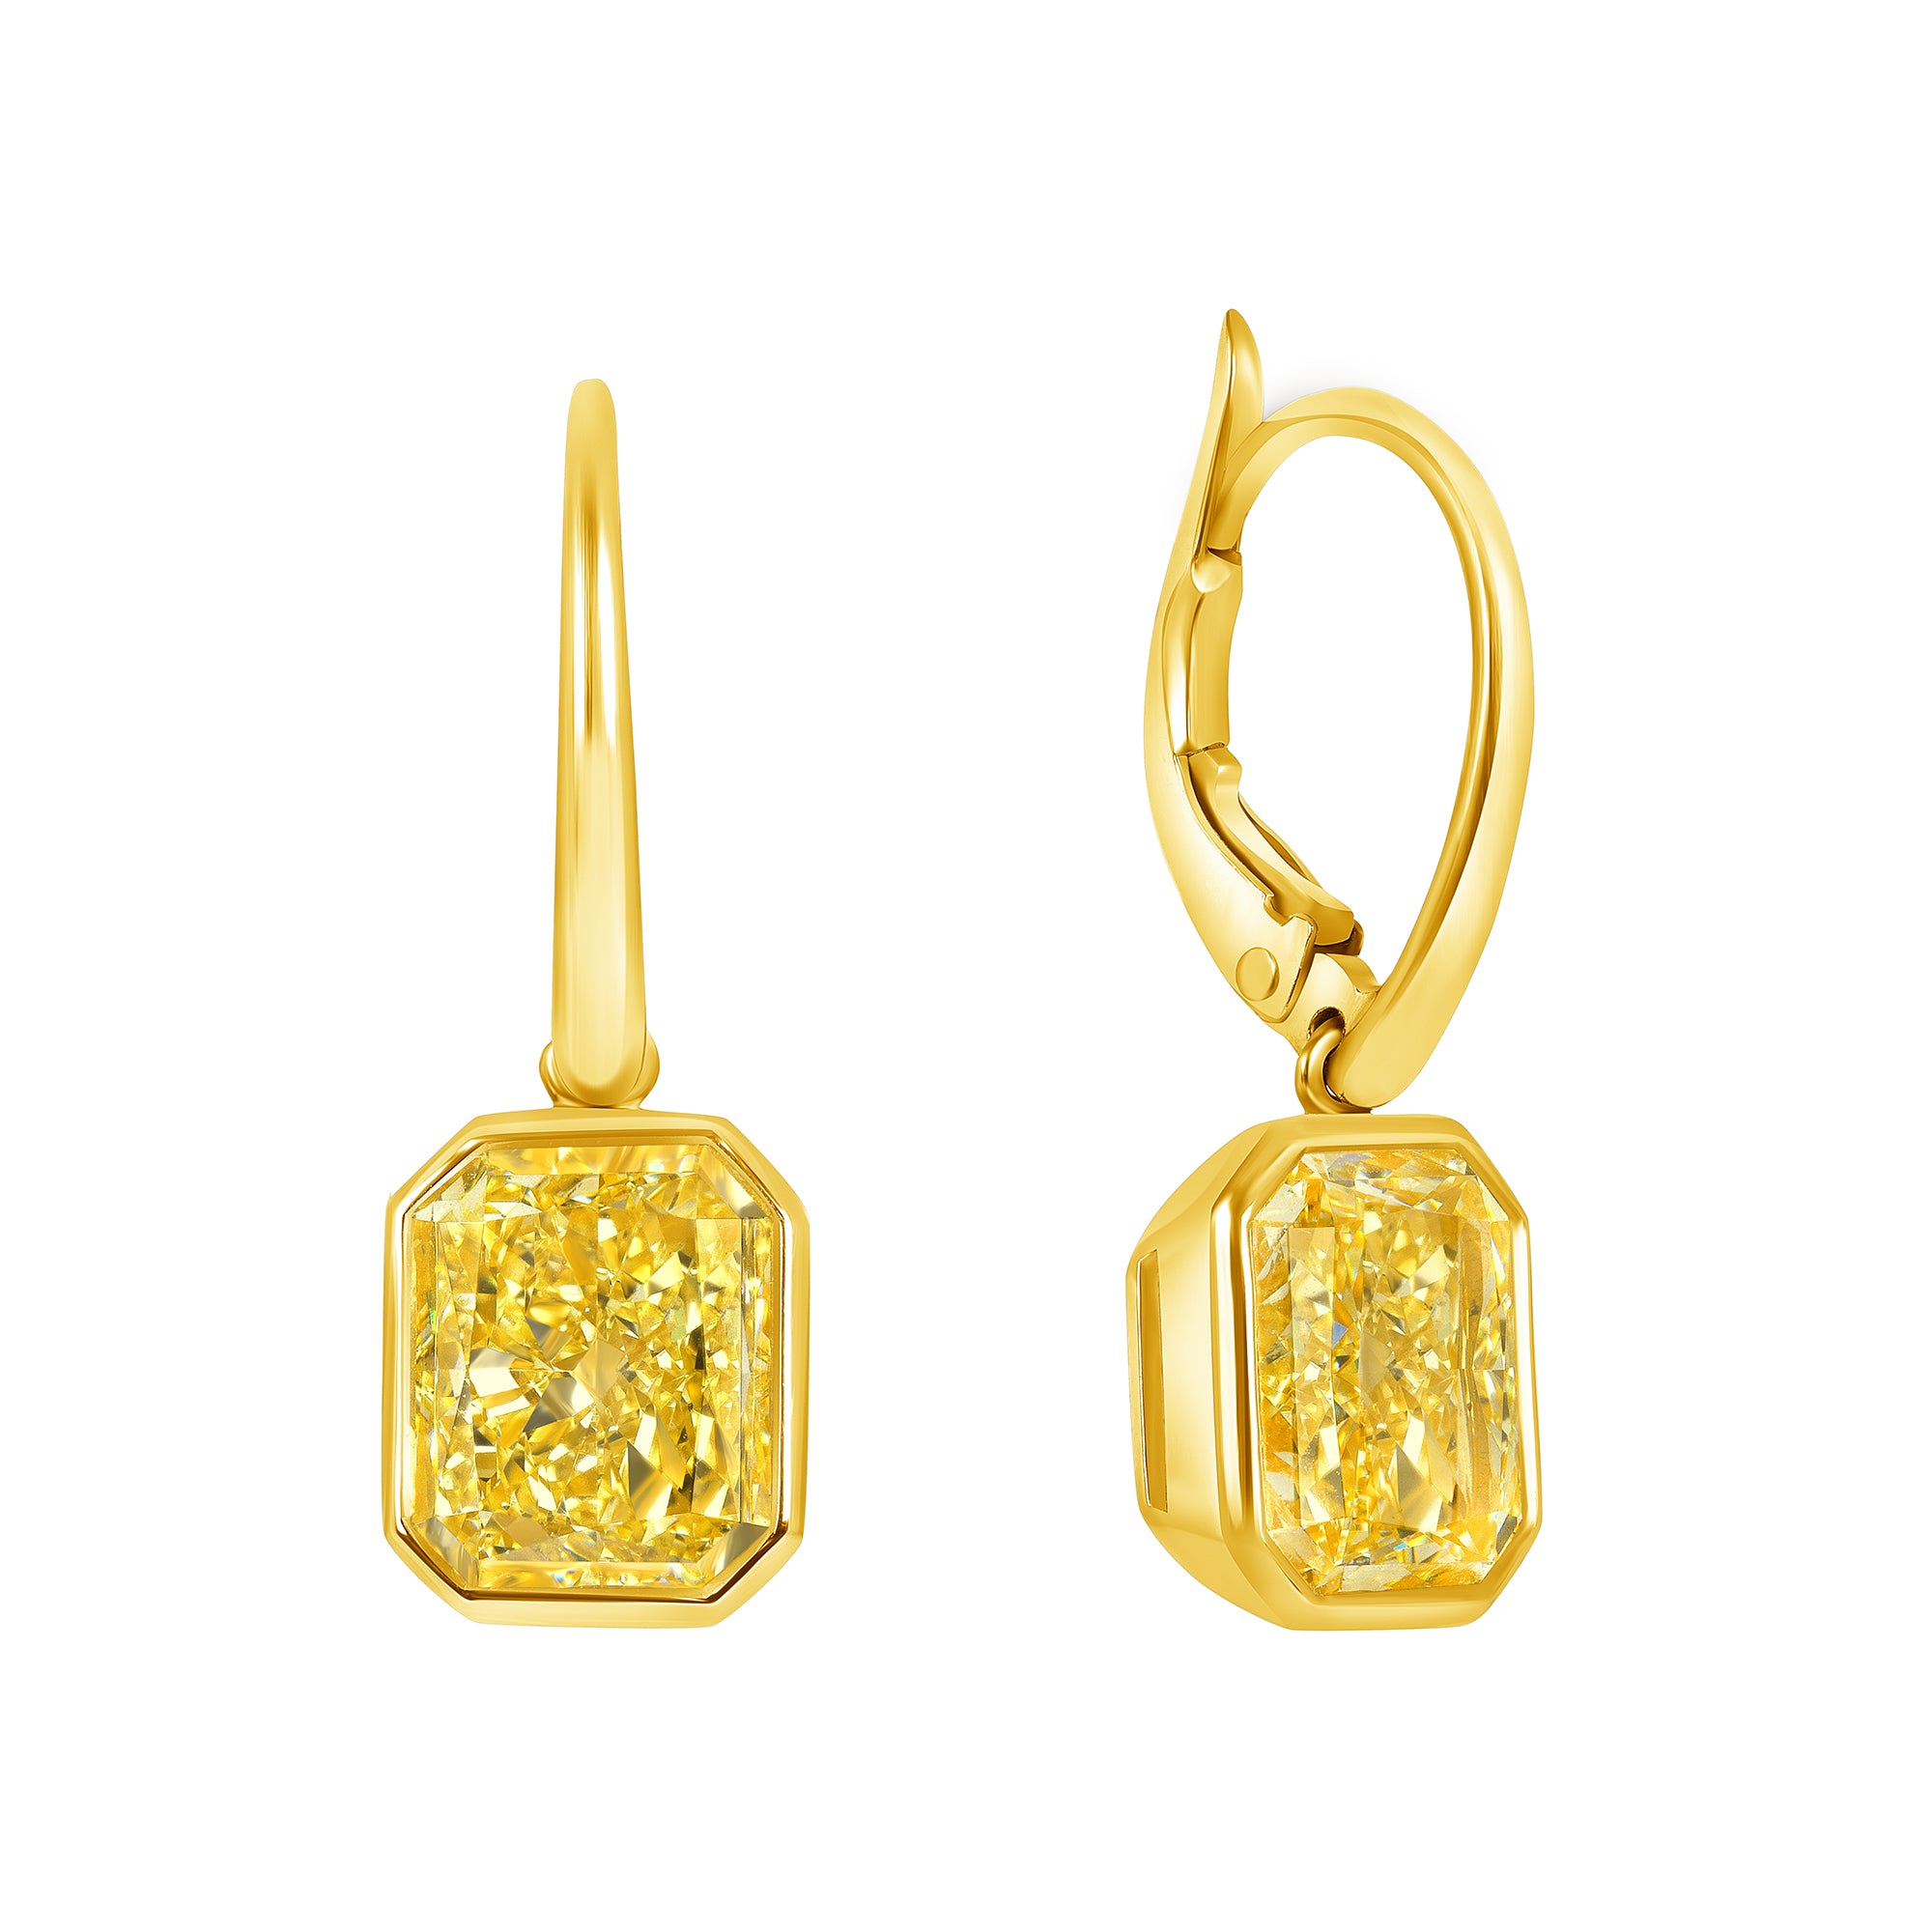 Radiant Cut Bezel Set Fancy Yellow Diamond Dangle Earring in 18 Karat Yellow Gold